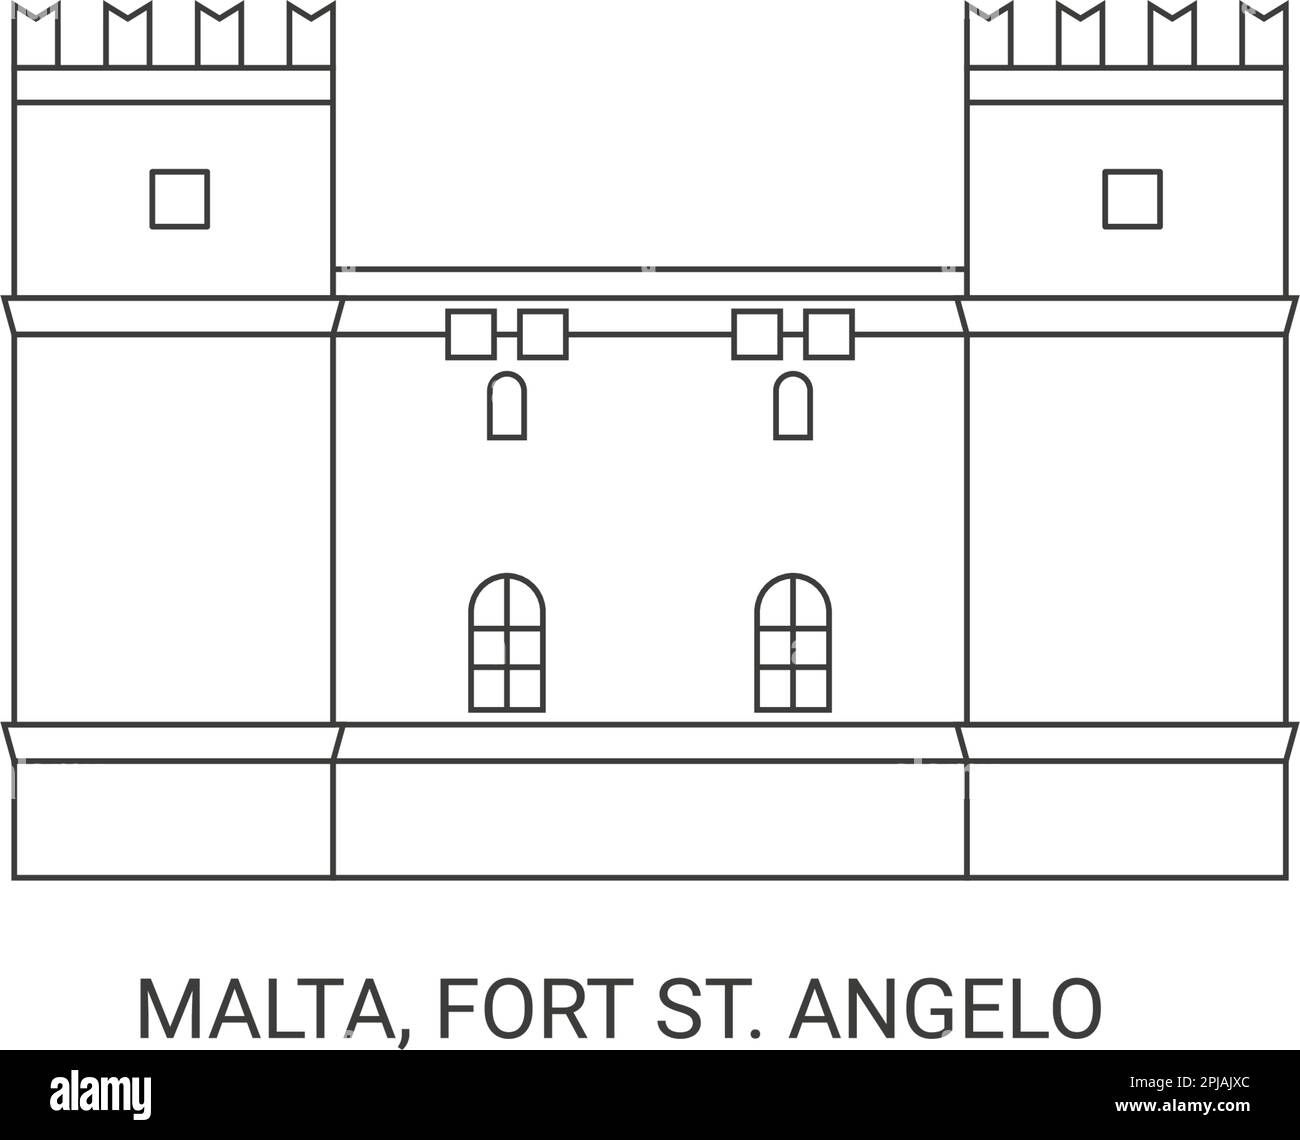 Malta, Fort St. Angelo, travel landmark vector illustration Stock Vector